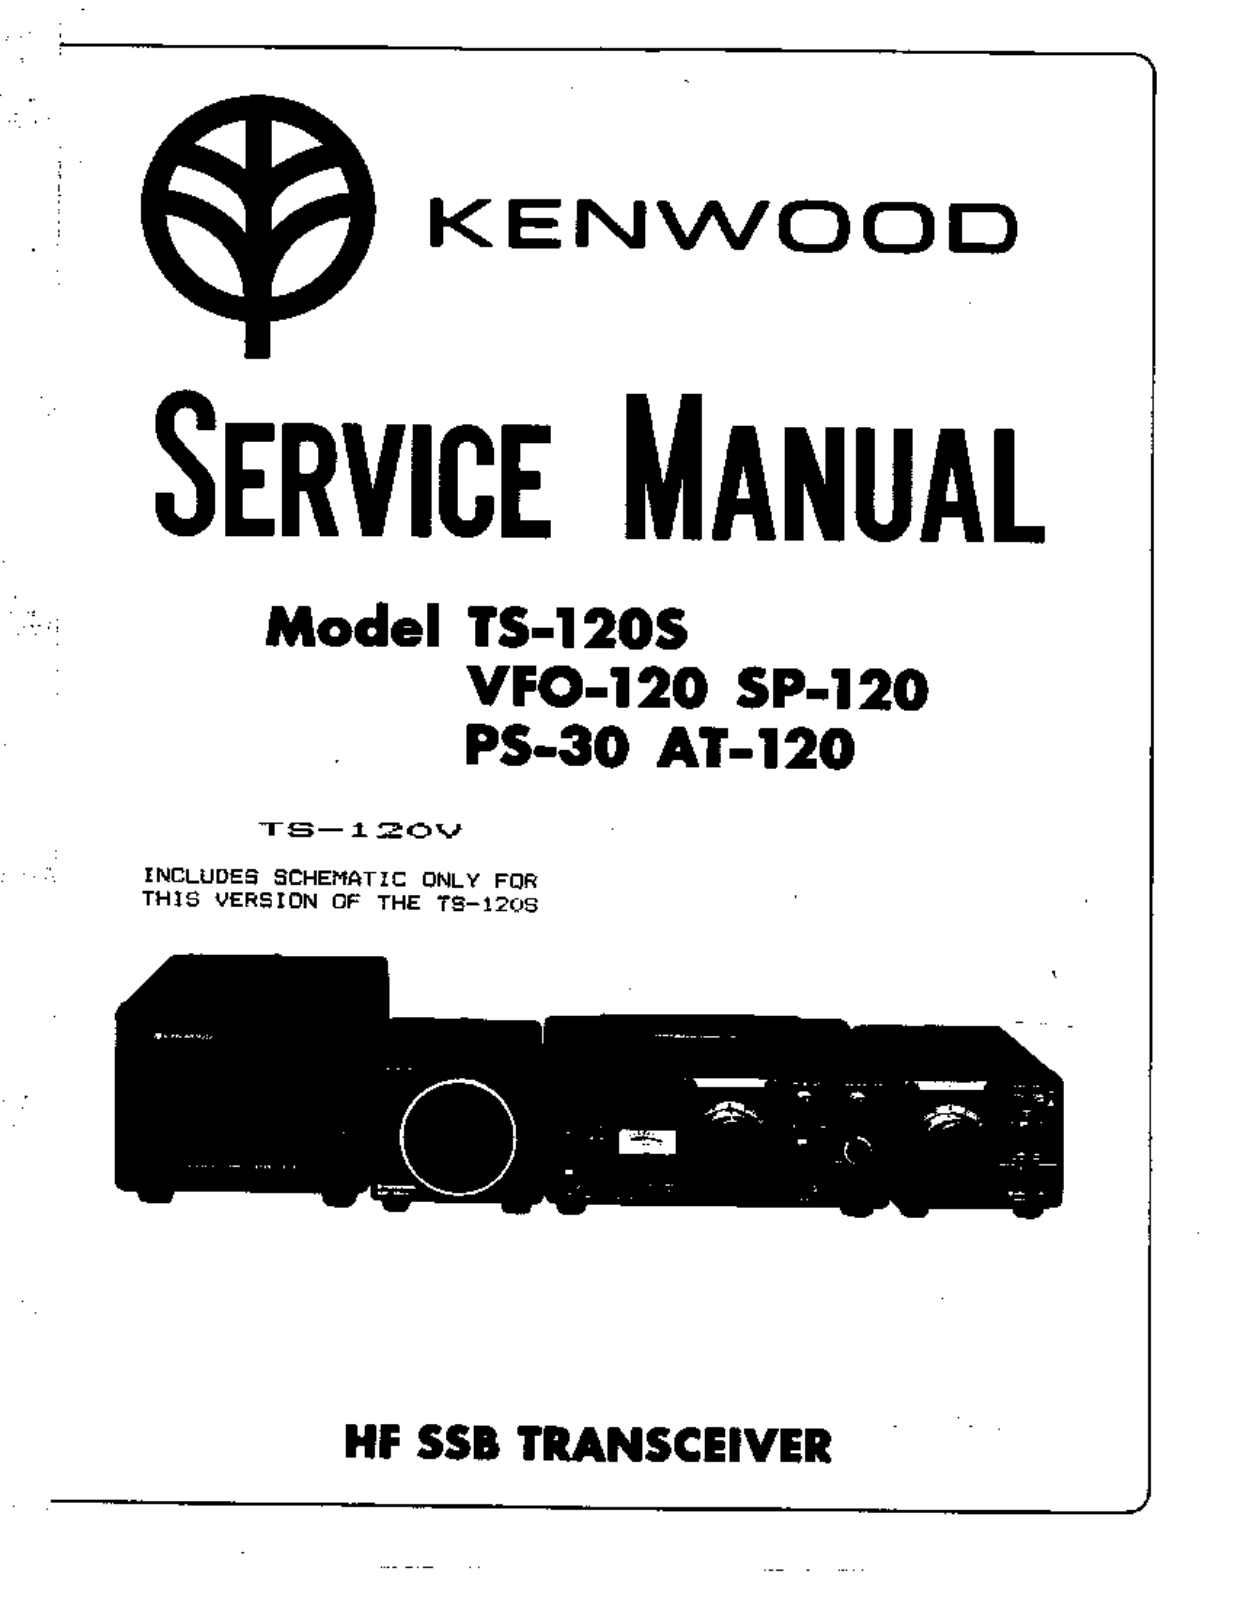 Kenwood AT-120, PS-30, SP-120, VFO-120, TS-120V Service Manual